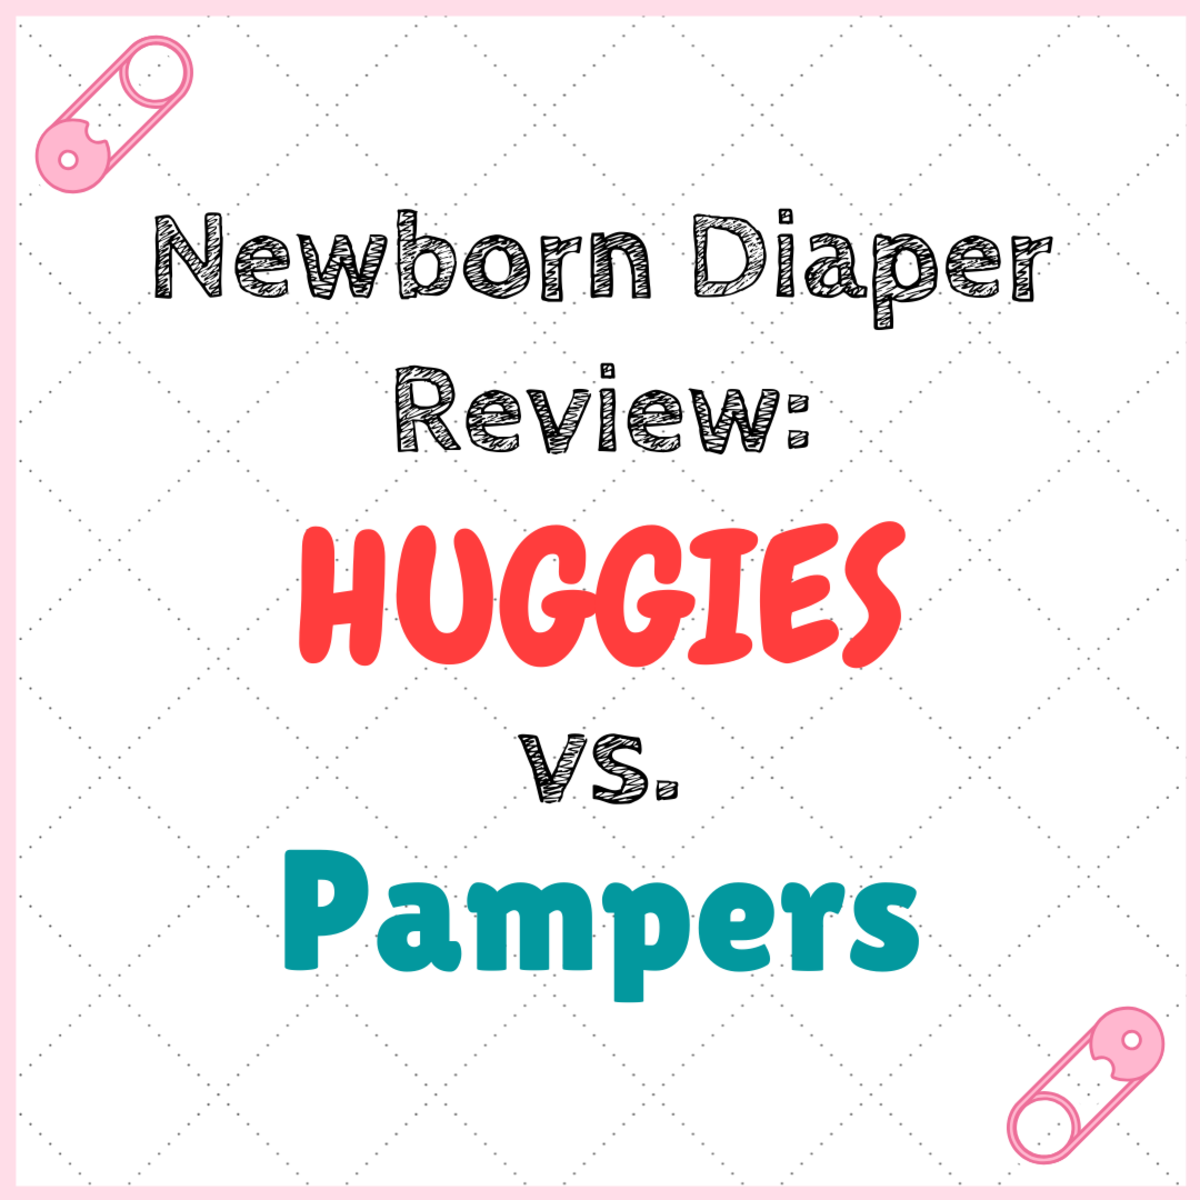 huggies newborn diapers bulk